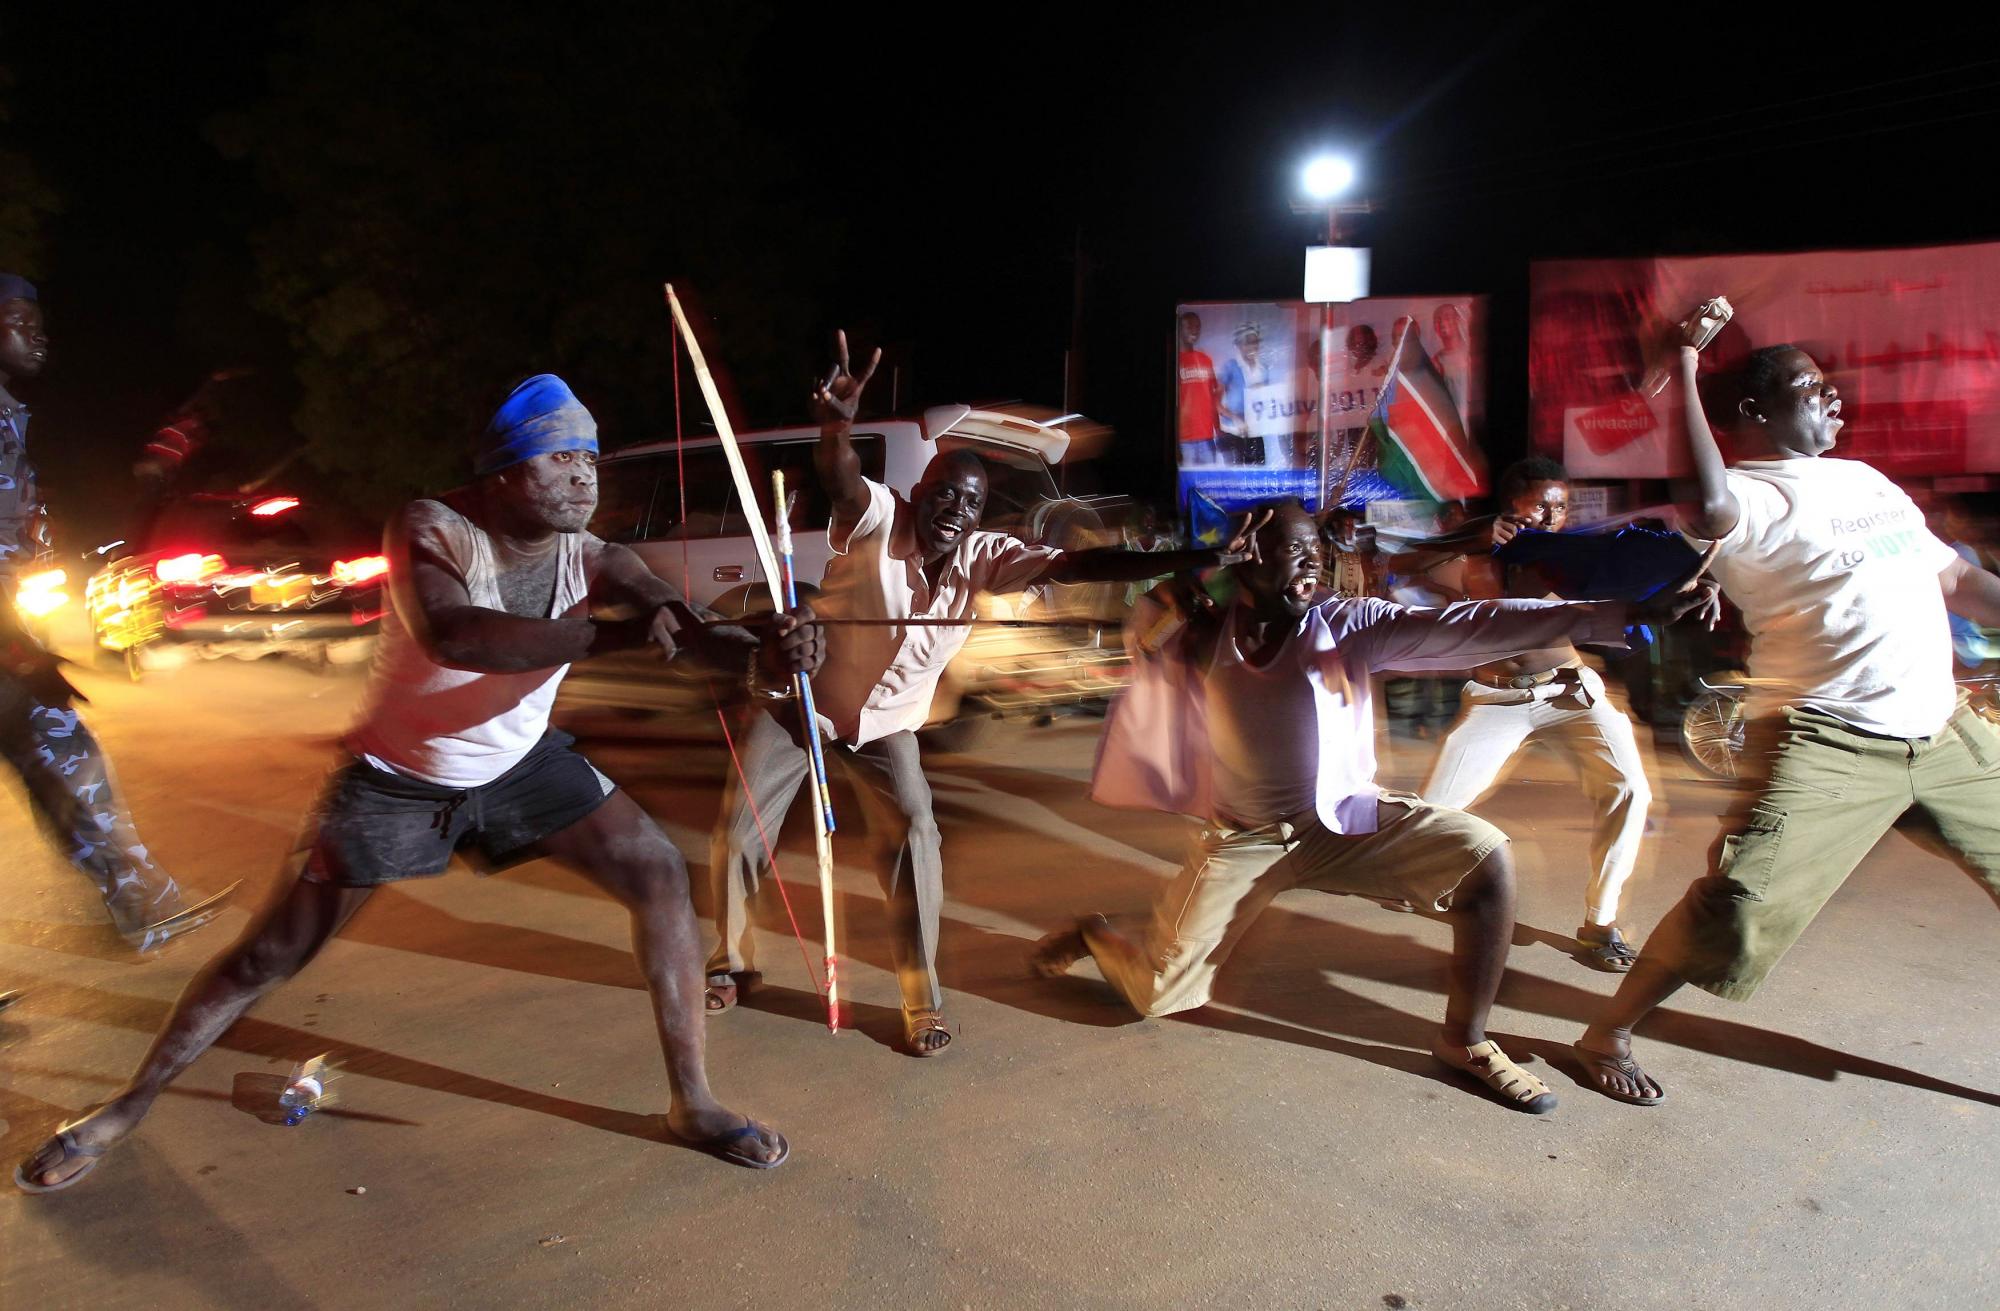 南苏丹举行独立庆典 中国派特使参加、与其建交